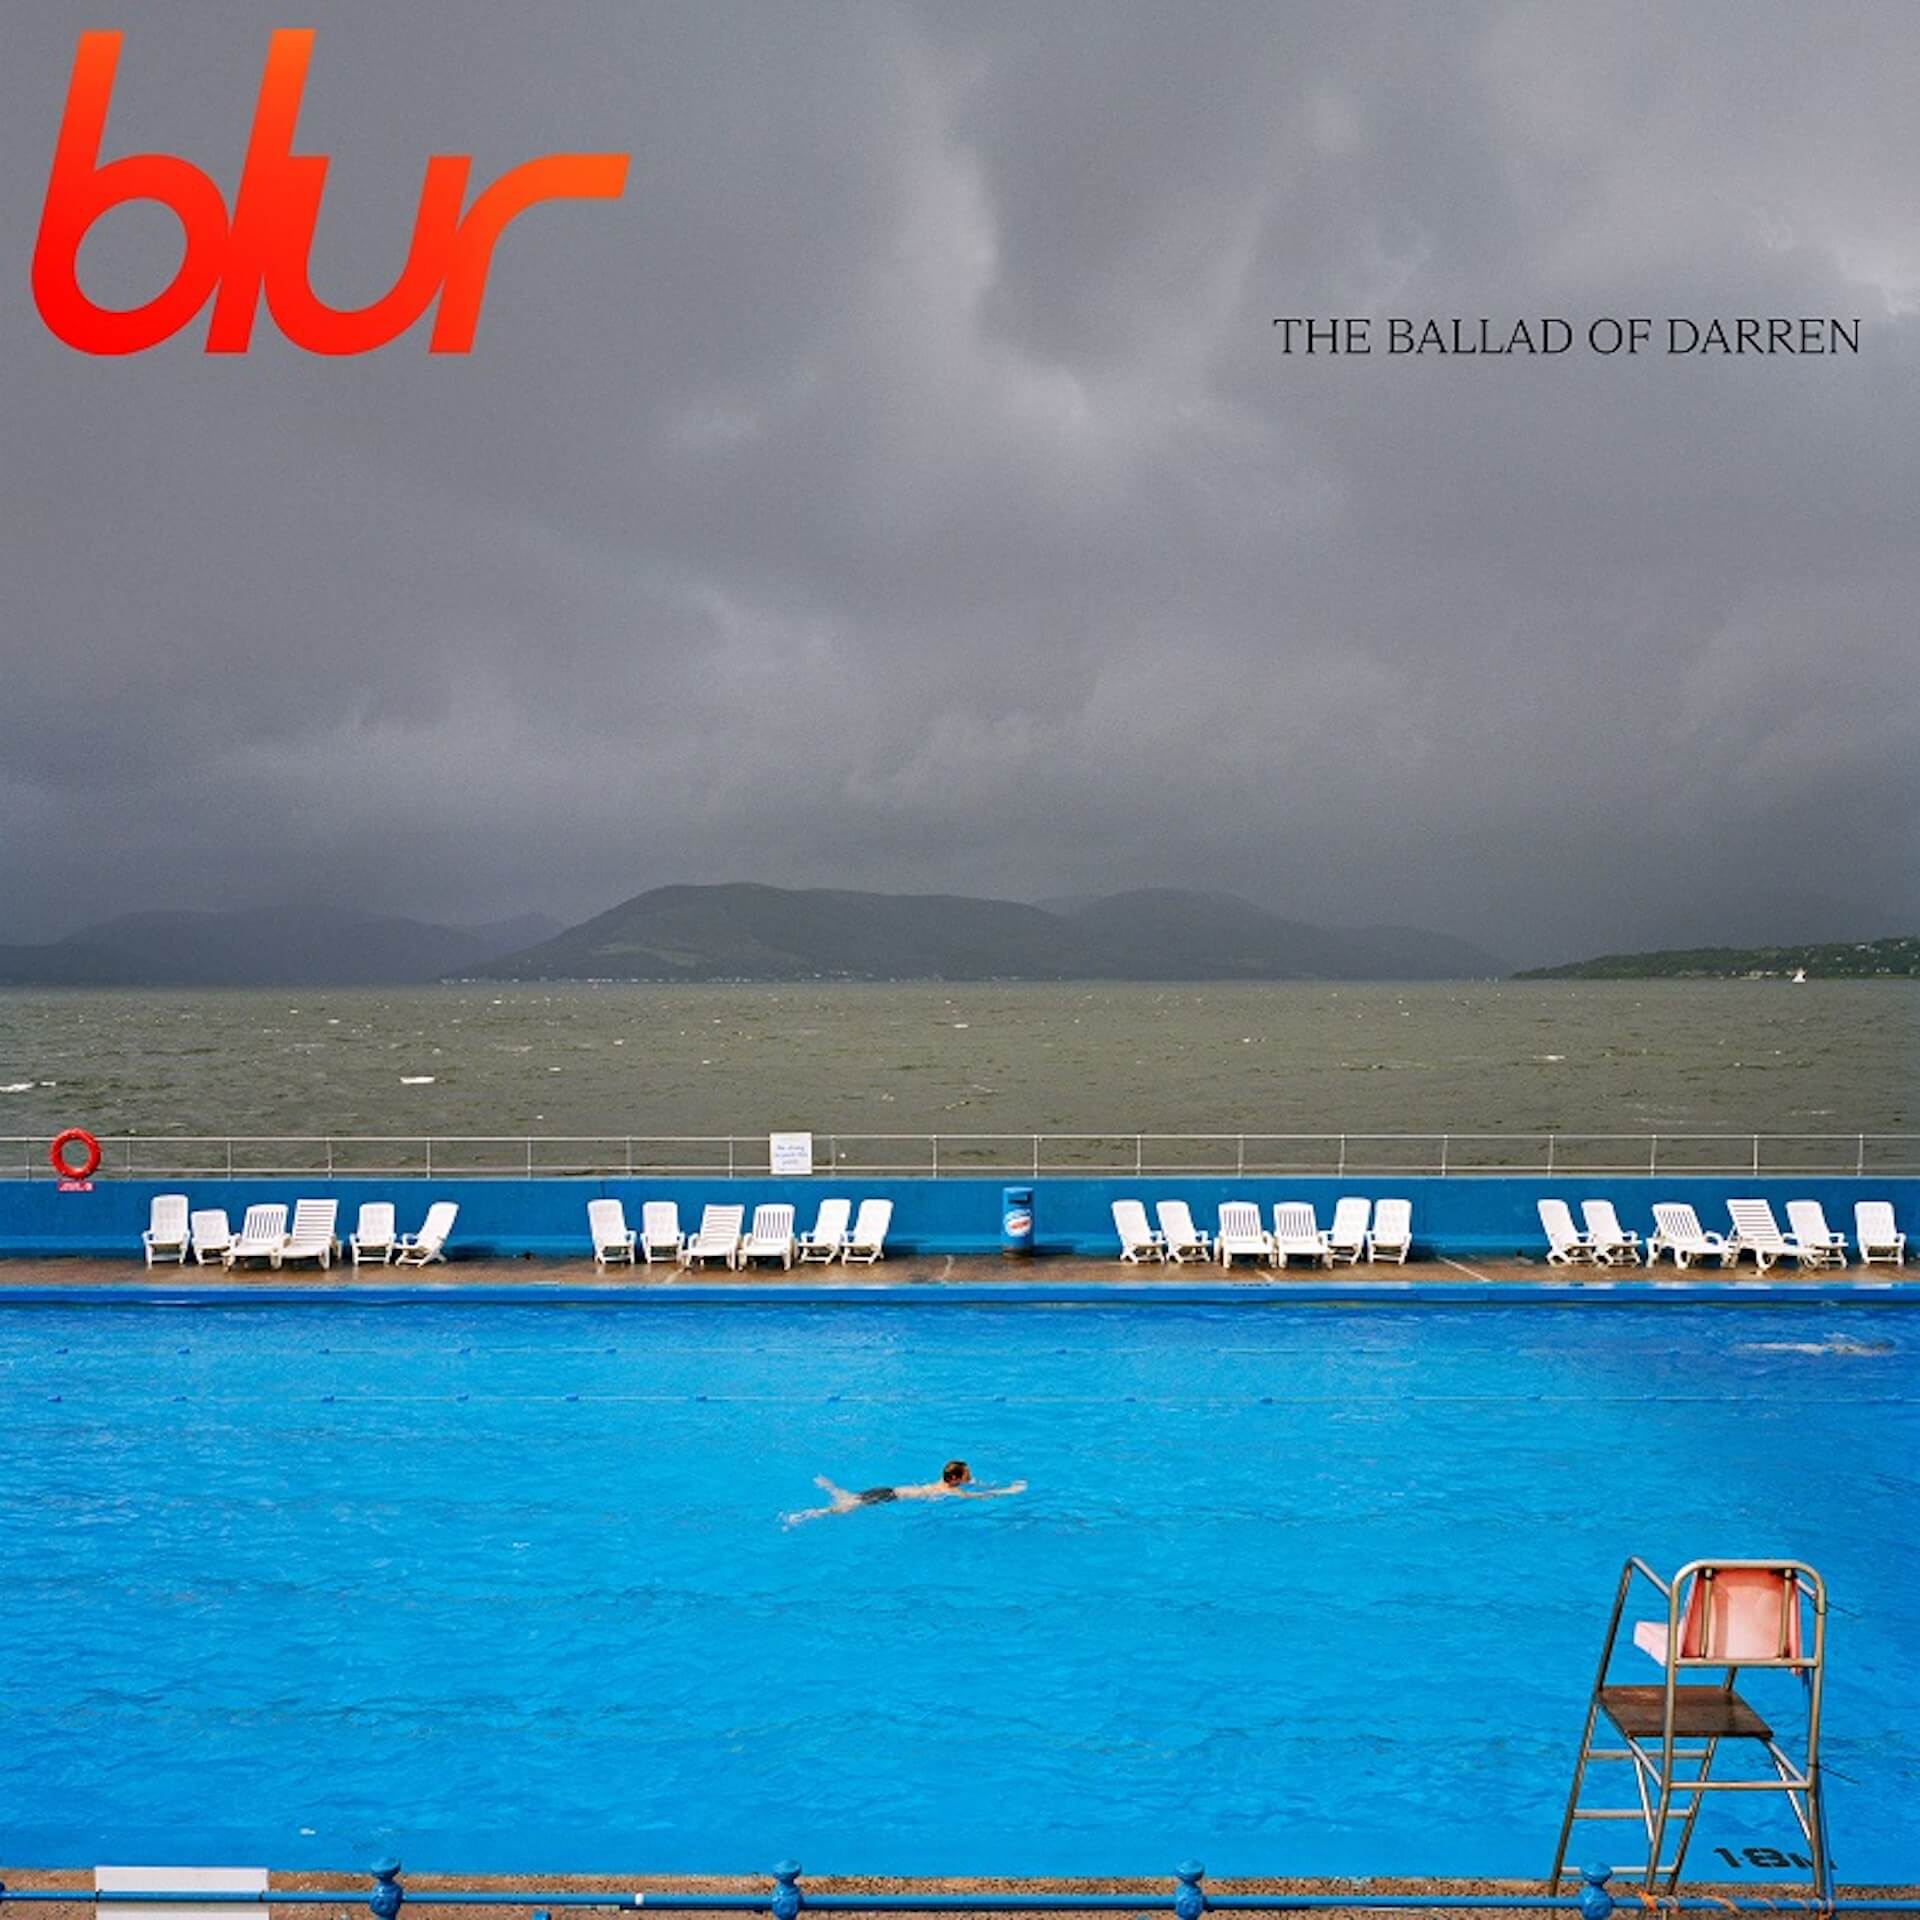 blur、約8年ぶりとなる新作アルバム『The Ballad of Darren』国内盤CDが発売決定｜ボーナス・トラックも収録予定 music230530_blur-01